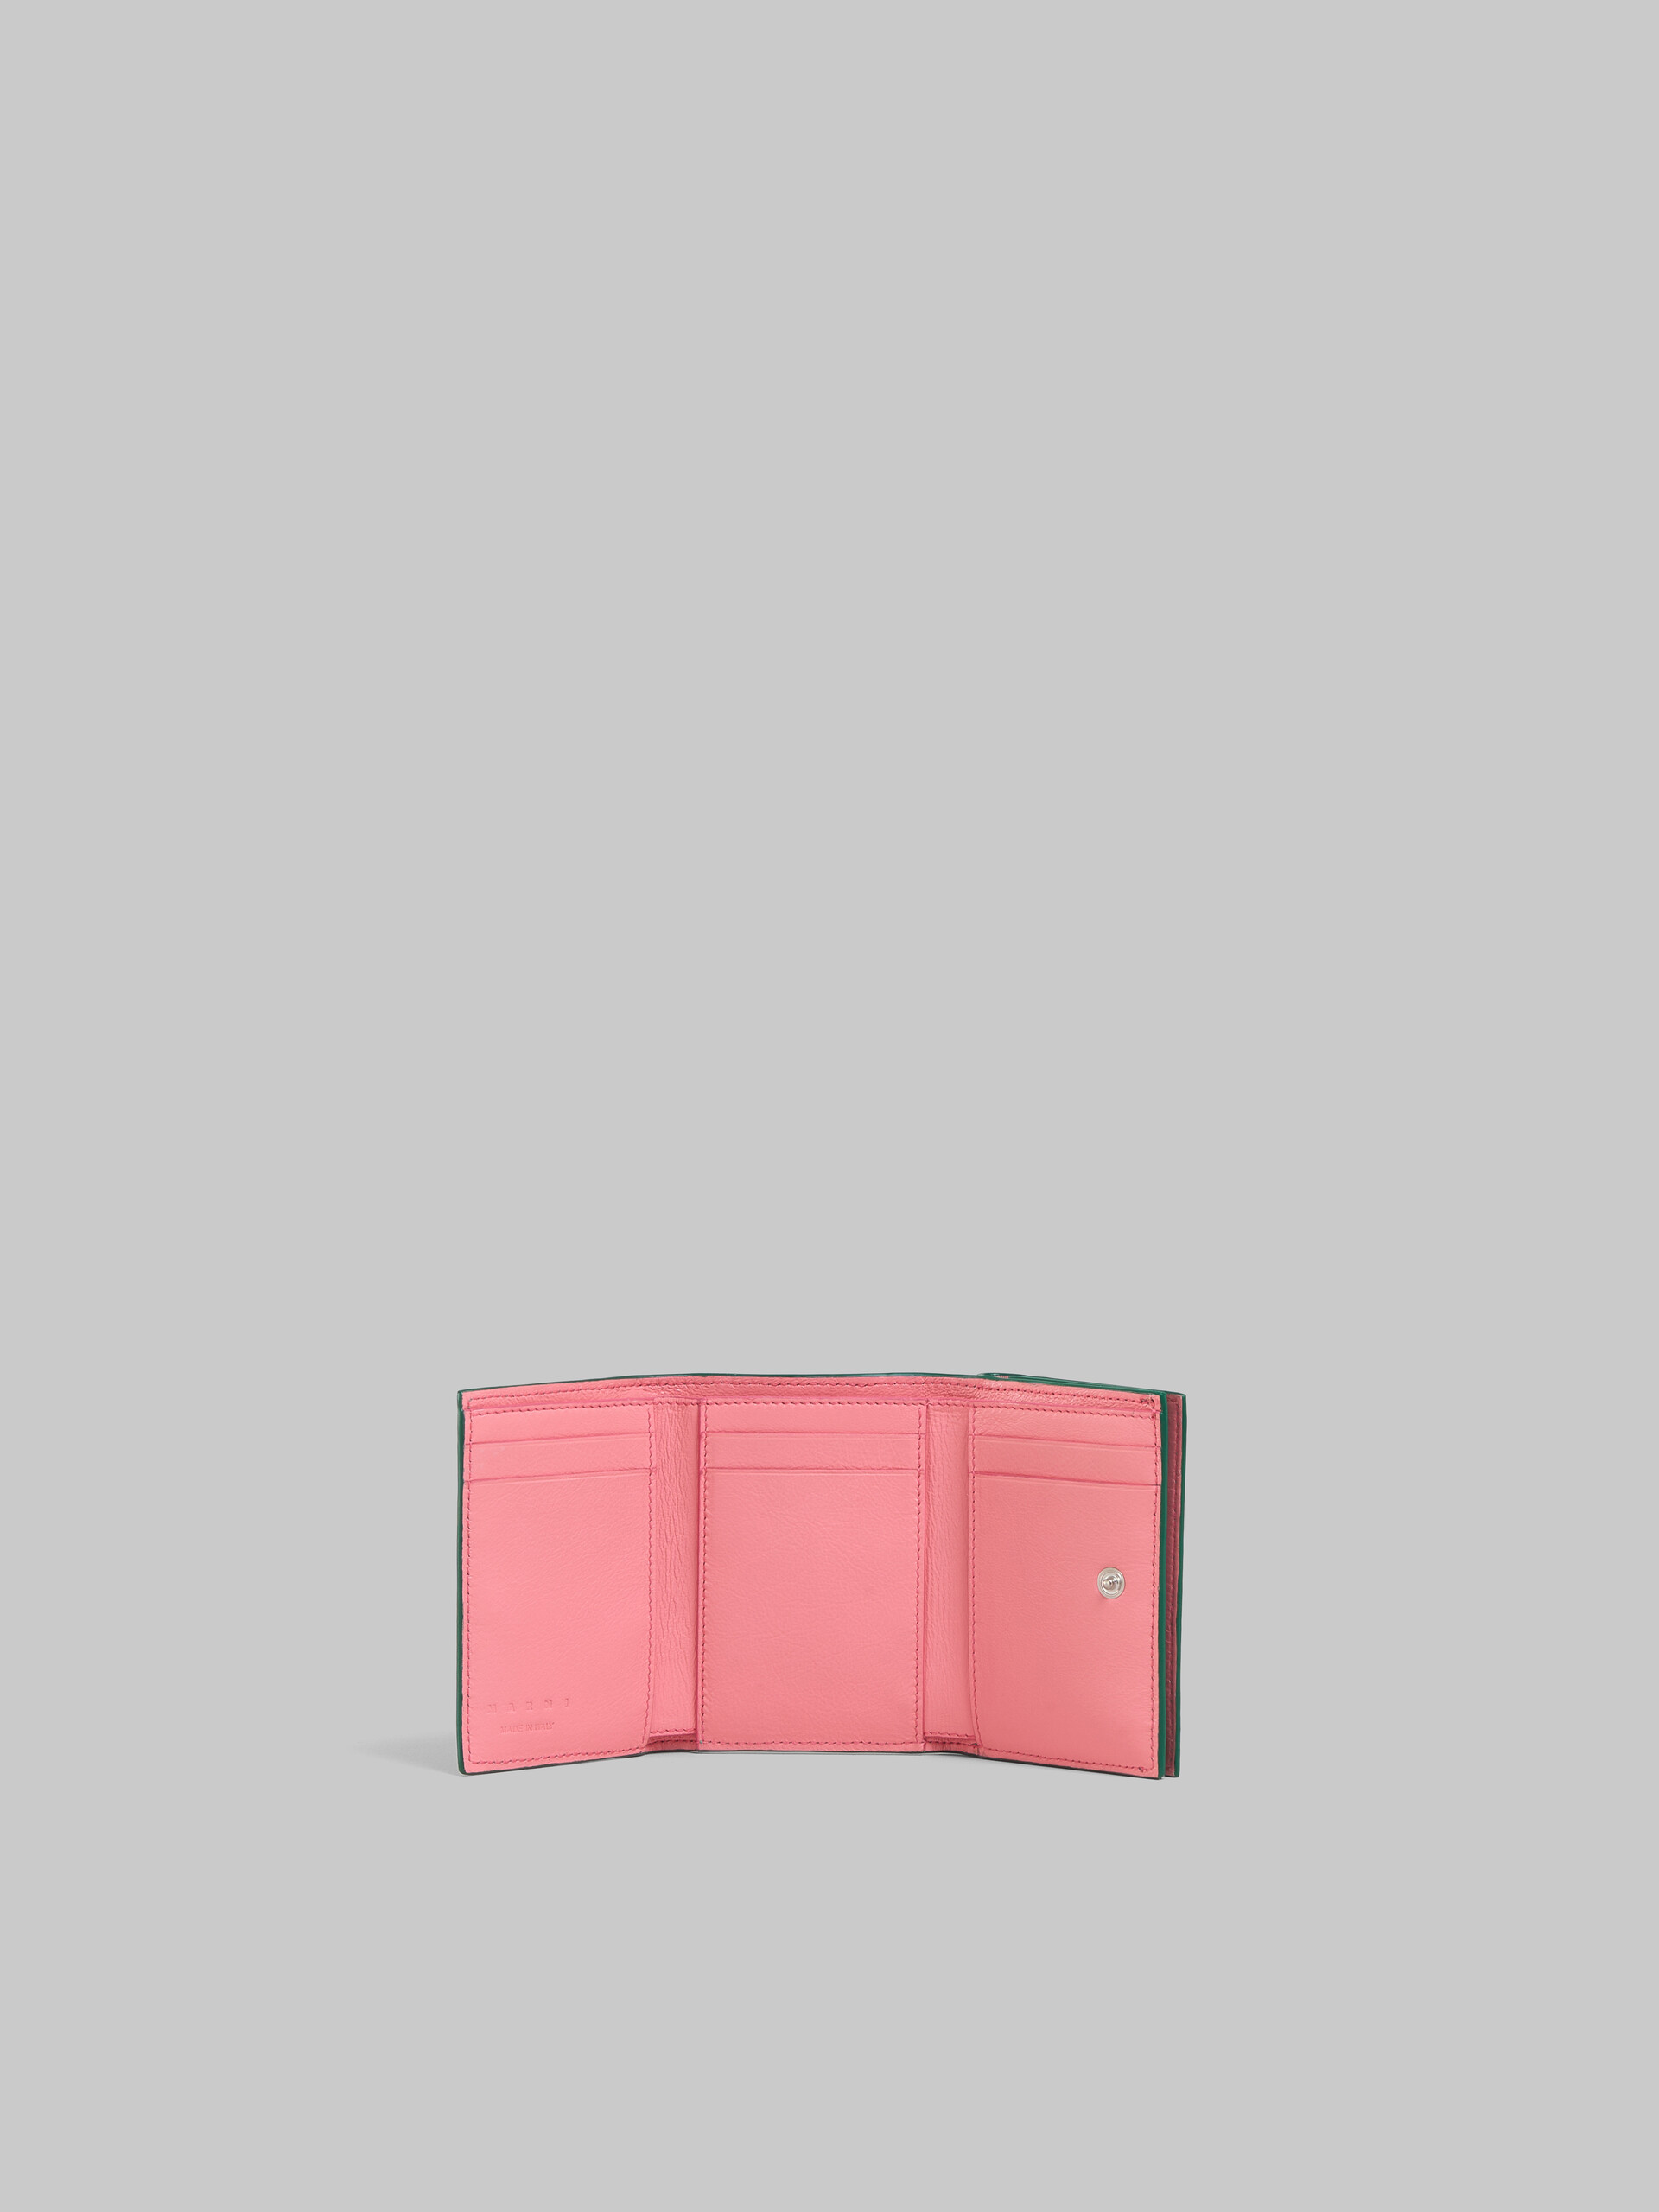 ブラック レザー メンディング 三つ折りウォレット - 財布 - Image 2